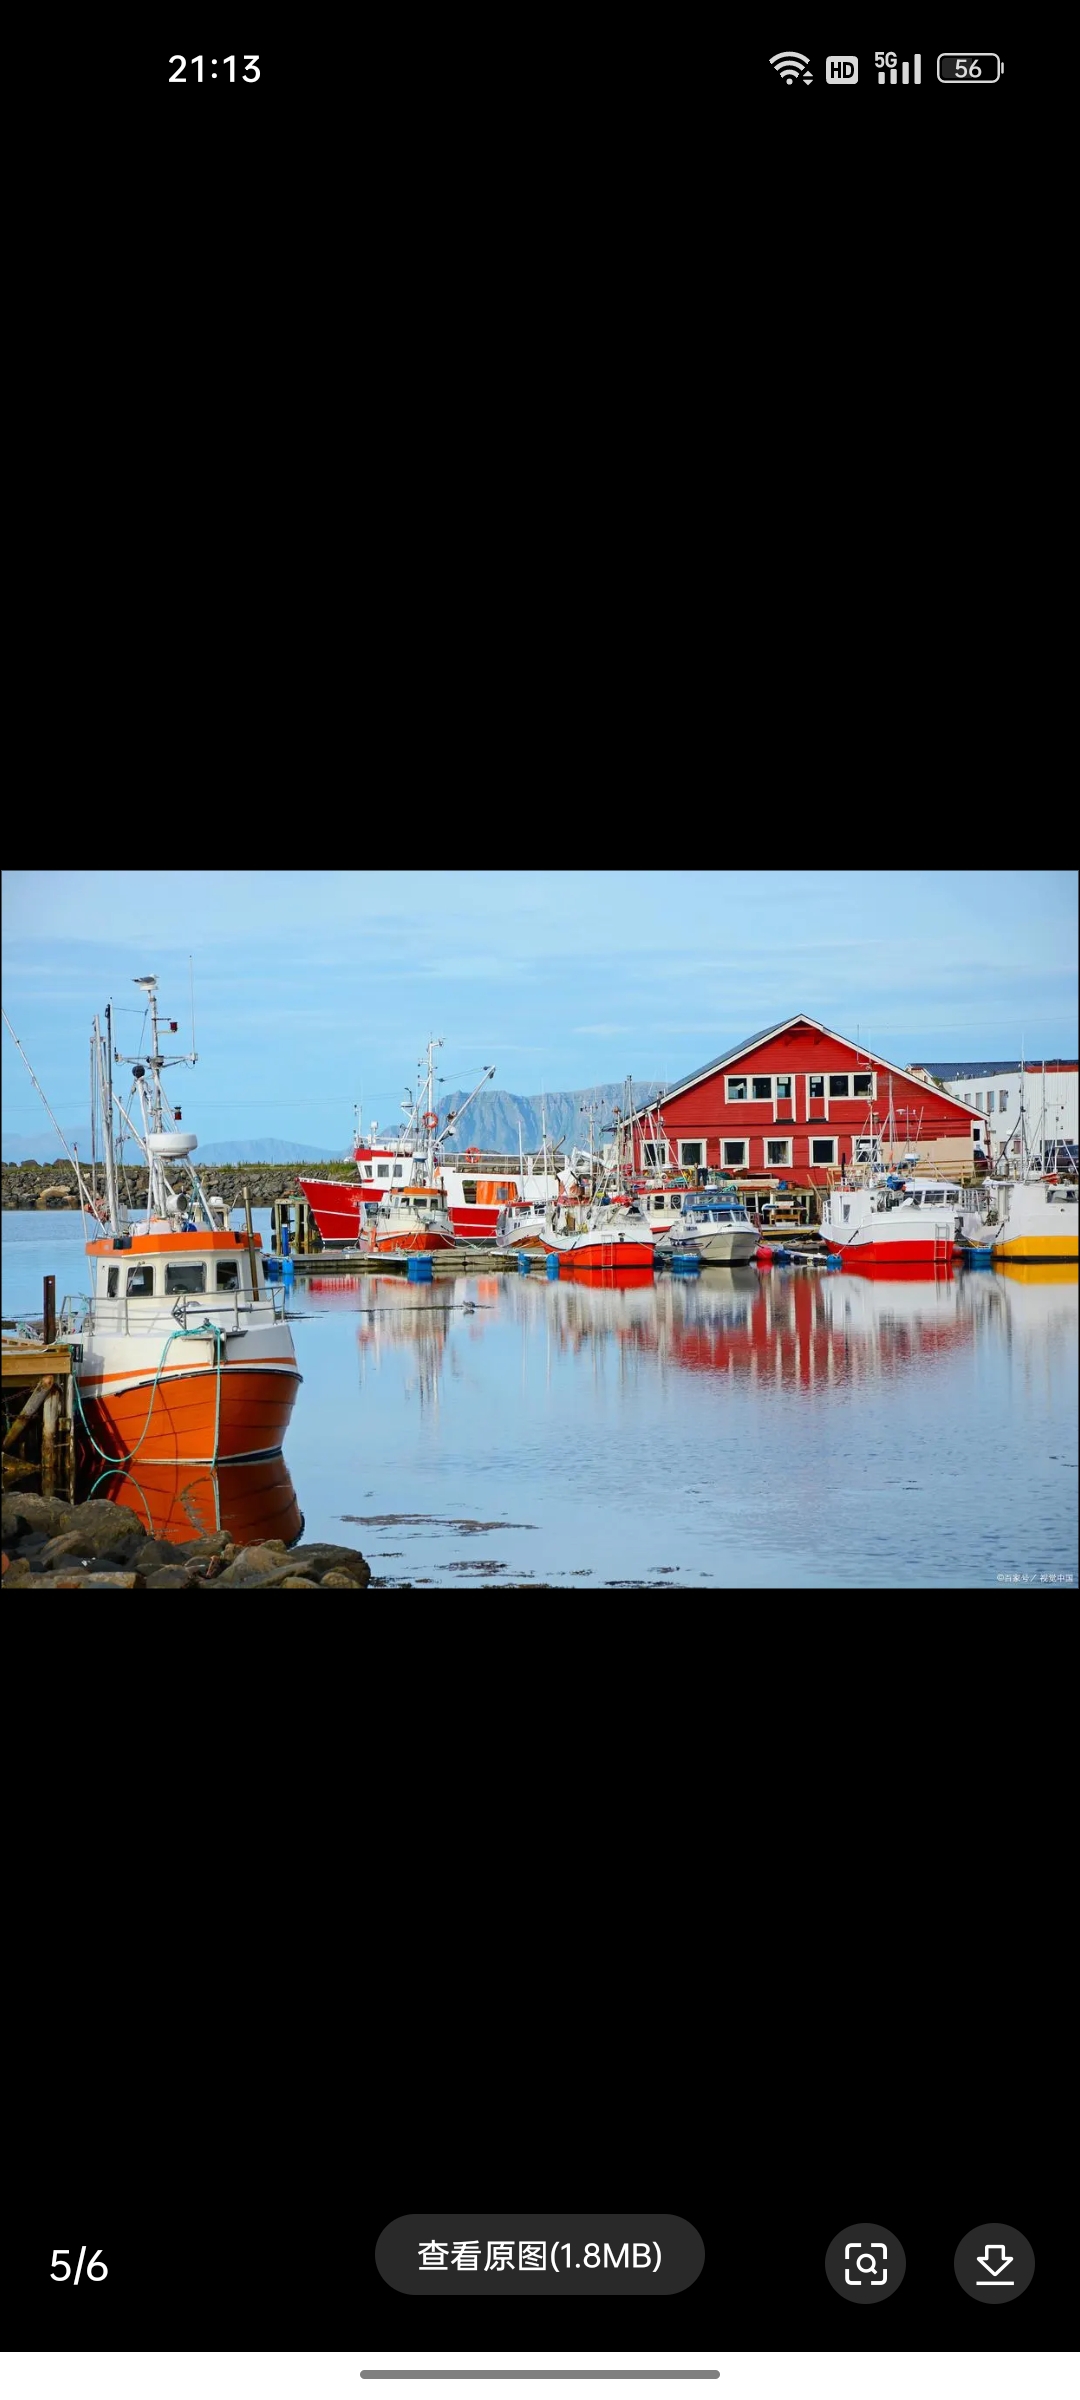 特隆赫姆港口，它是挪威北部最重要的港口之一，位于北极圈内。特隆赫姆港口是一个天然深水港，具有良好的水